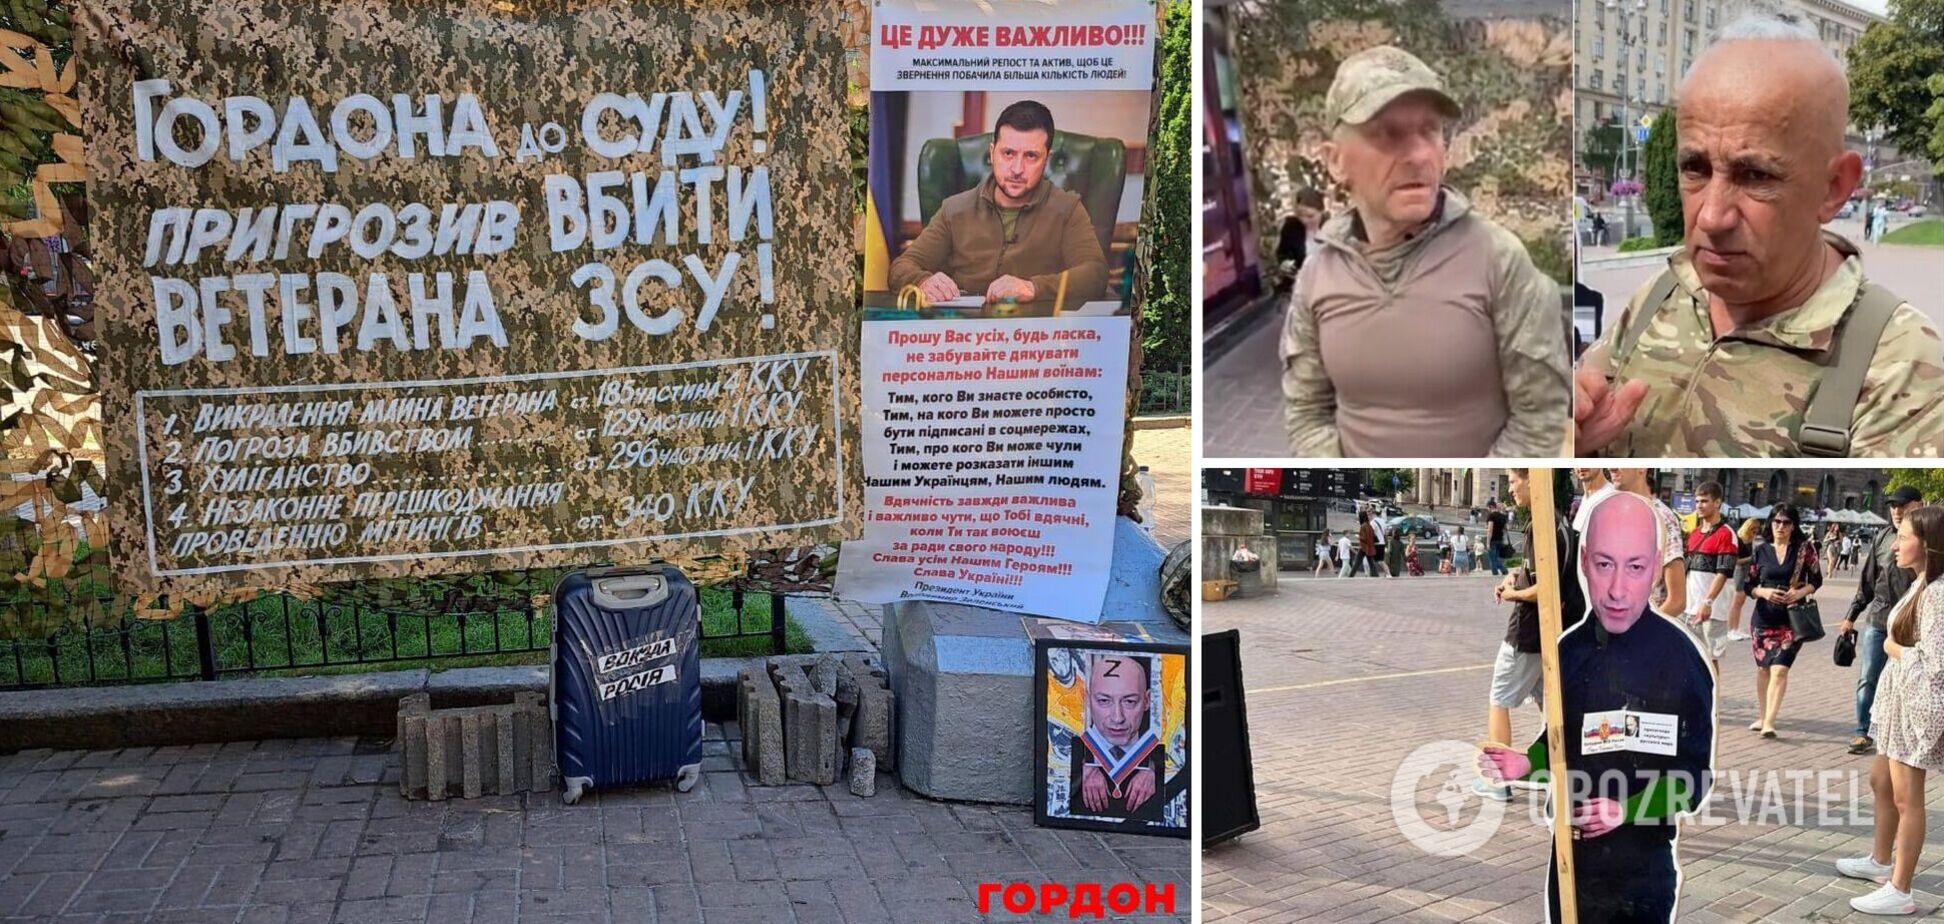 Ни дня на фронте, провокации и воровство гуманитарки: СМИ рассказали, кем оказались люди в камуфляже, у которых произошел конфликт с Гордоном в Киеве